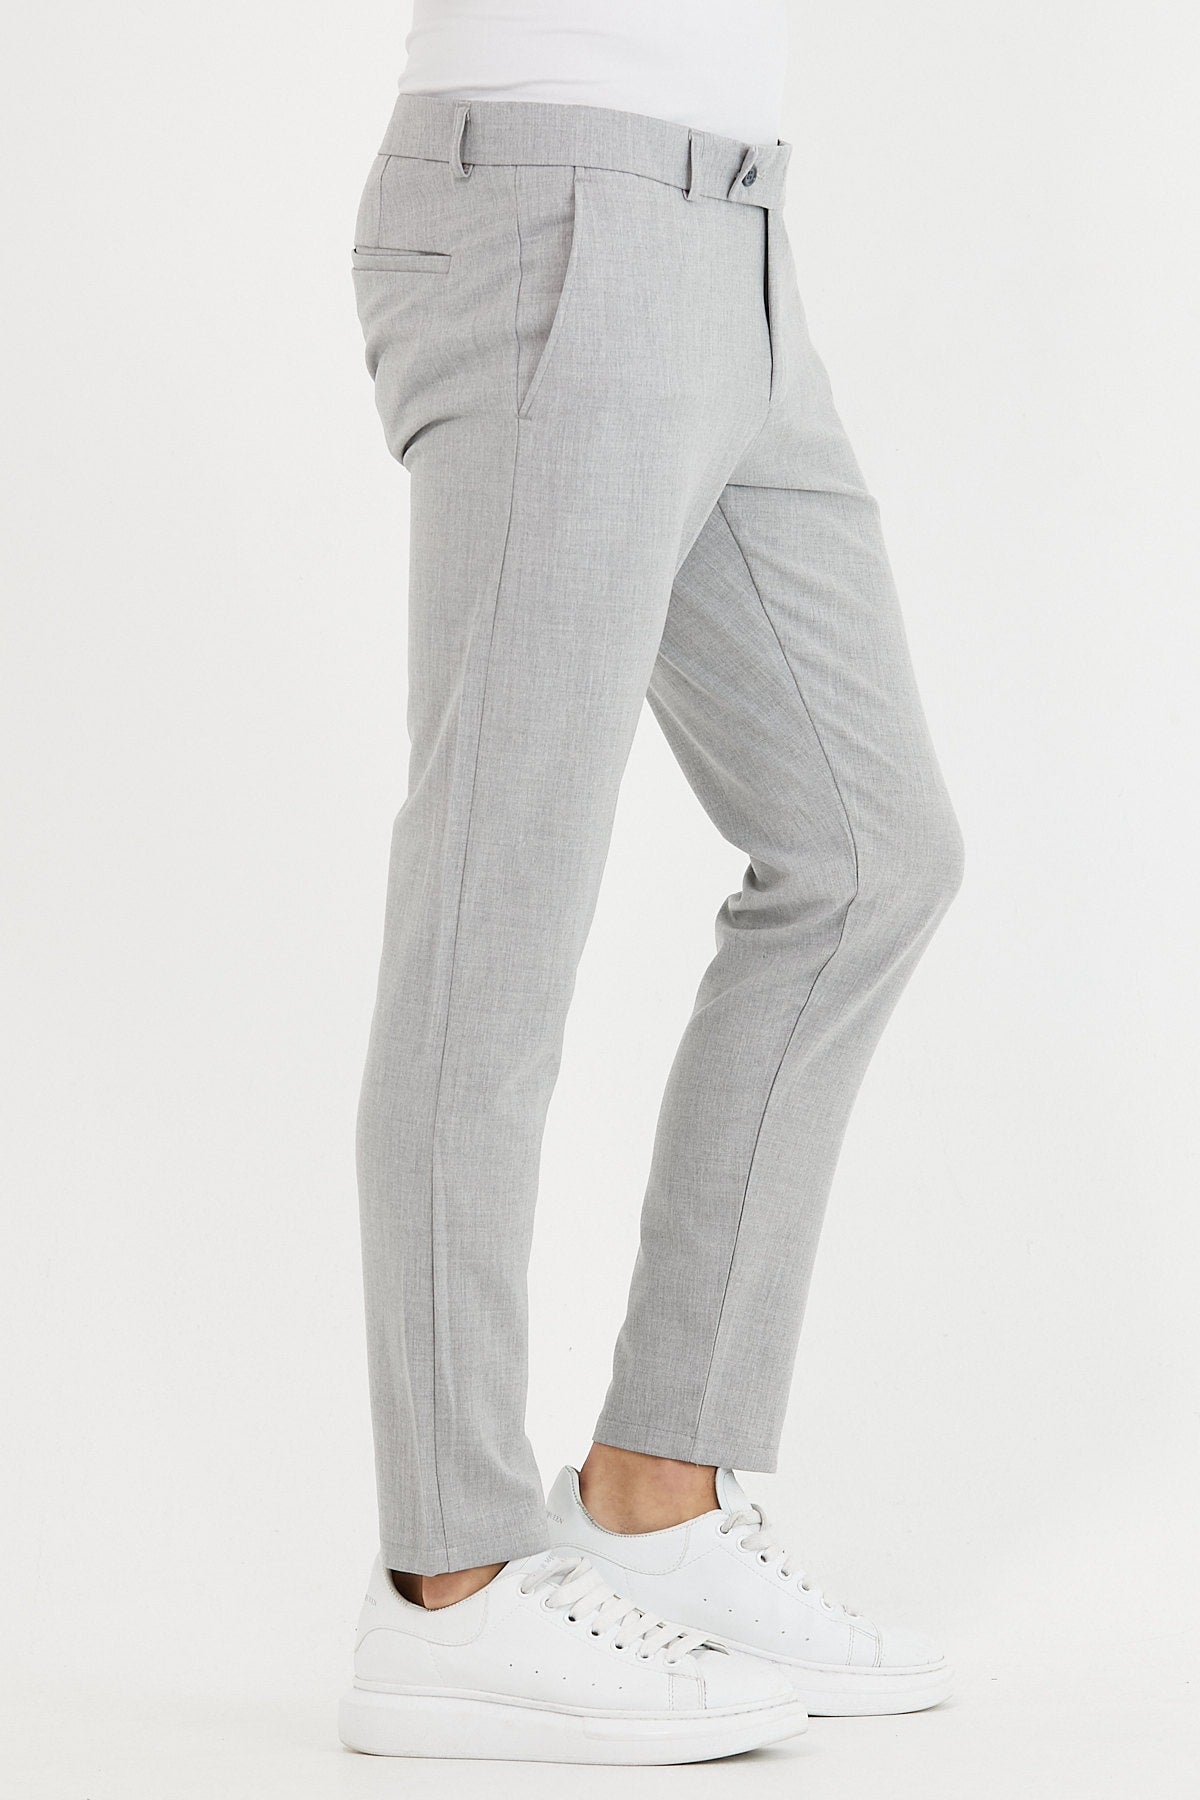  Мужские серые брюки итальянского качества из эластичной лайкры длиной до щиколотки